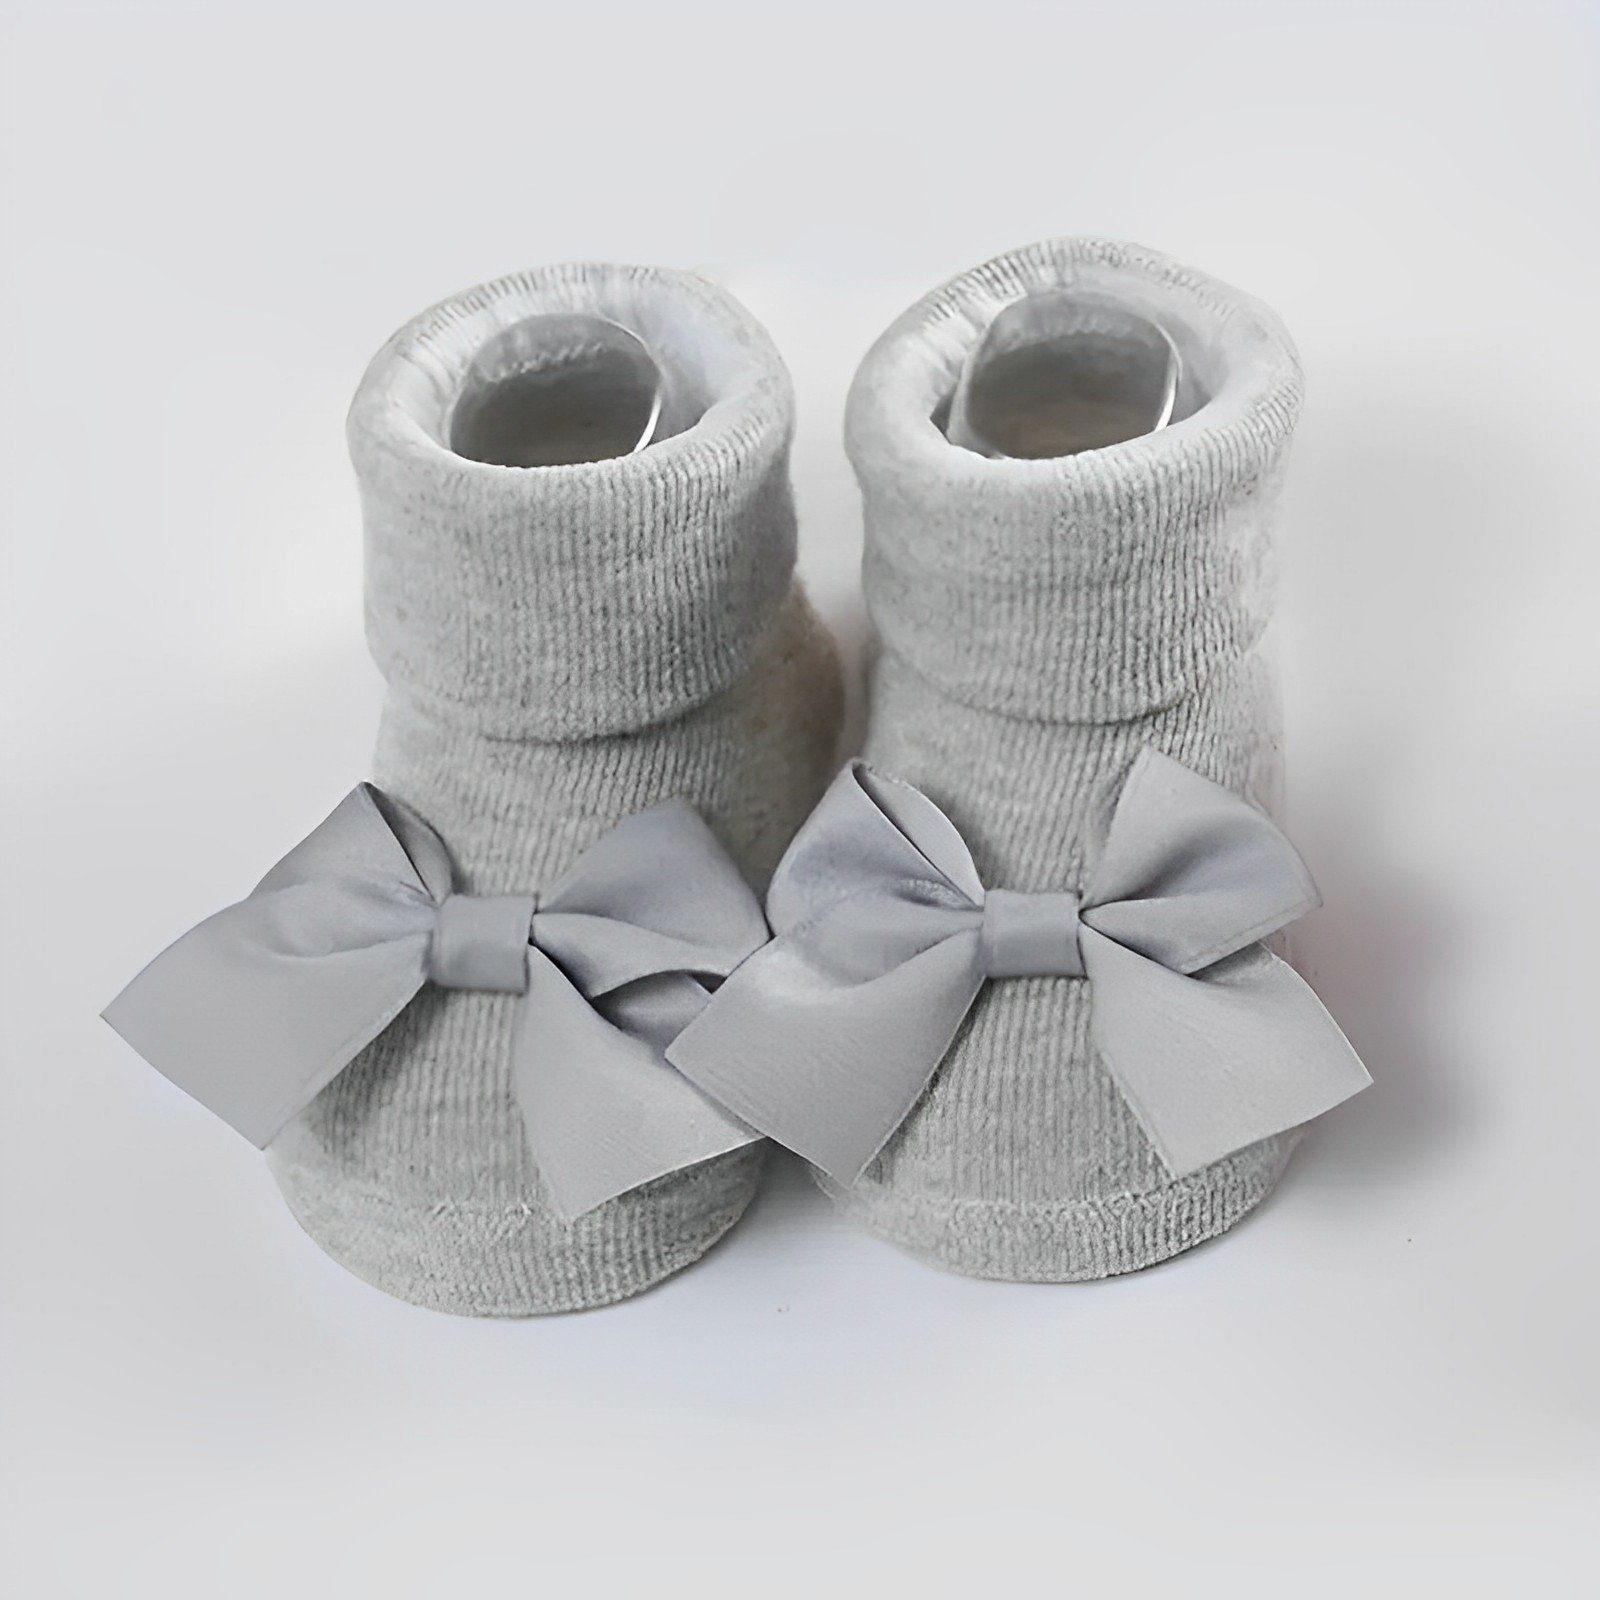 Matissa & Dad Neugeborenen-Geschenkset Süßes Baby Mädchen Stirnband und Socken Geschenkset für Neugeborenen (Set, 1x Stirnband, 1x Socken) grau